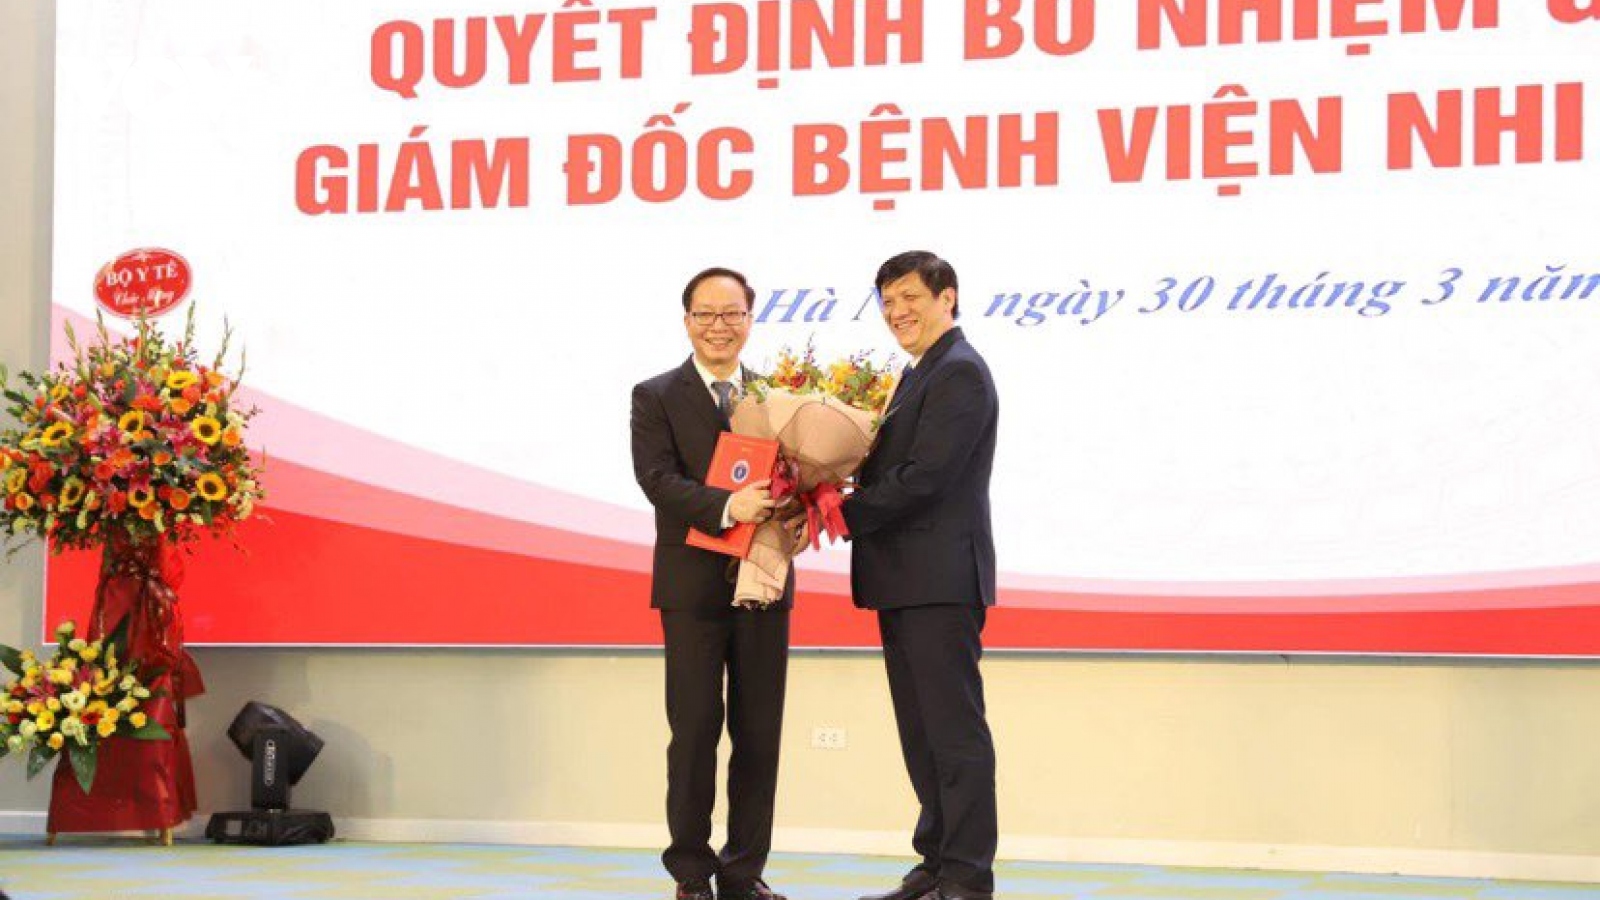 PGS.TS Trần Minh Điển được bổ nhiệm Giám đốc BV Nhi Trung ương